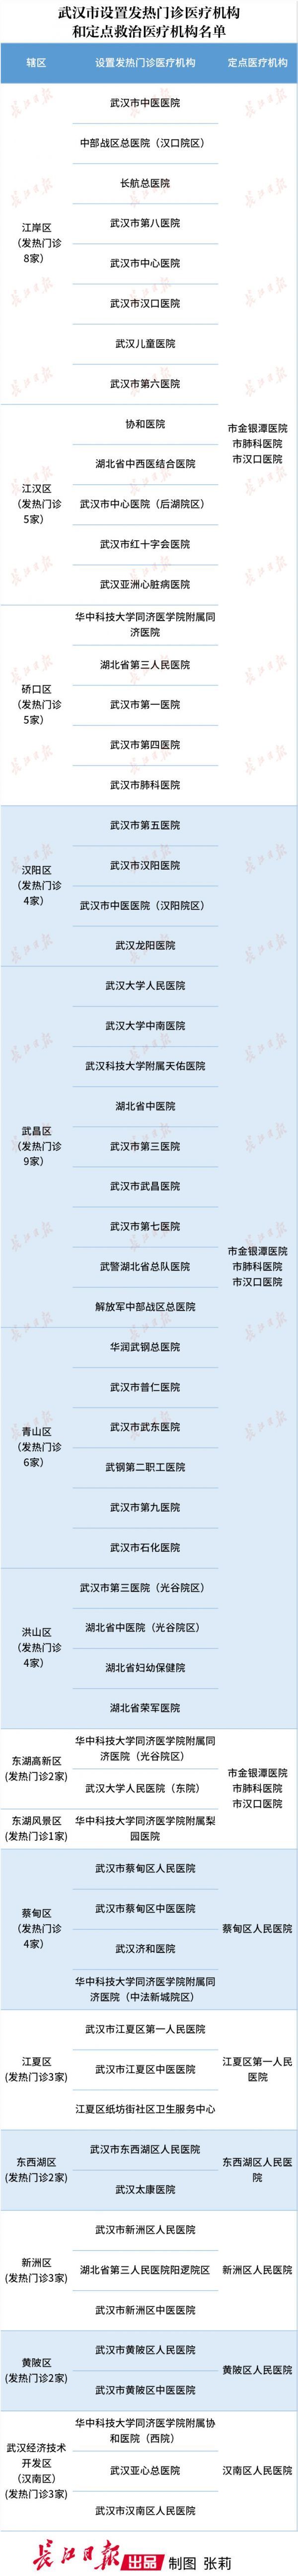 武汉市设置发热门诊医疗机构和定点救治医疗机构名单(图1)